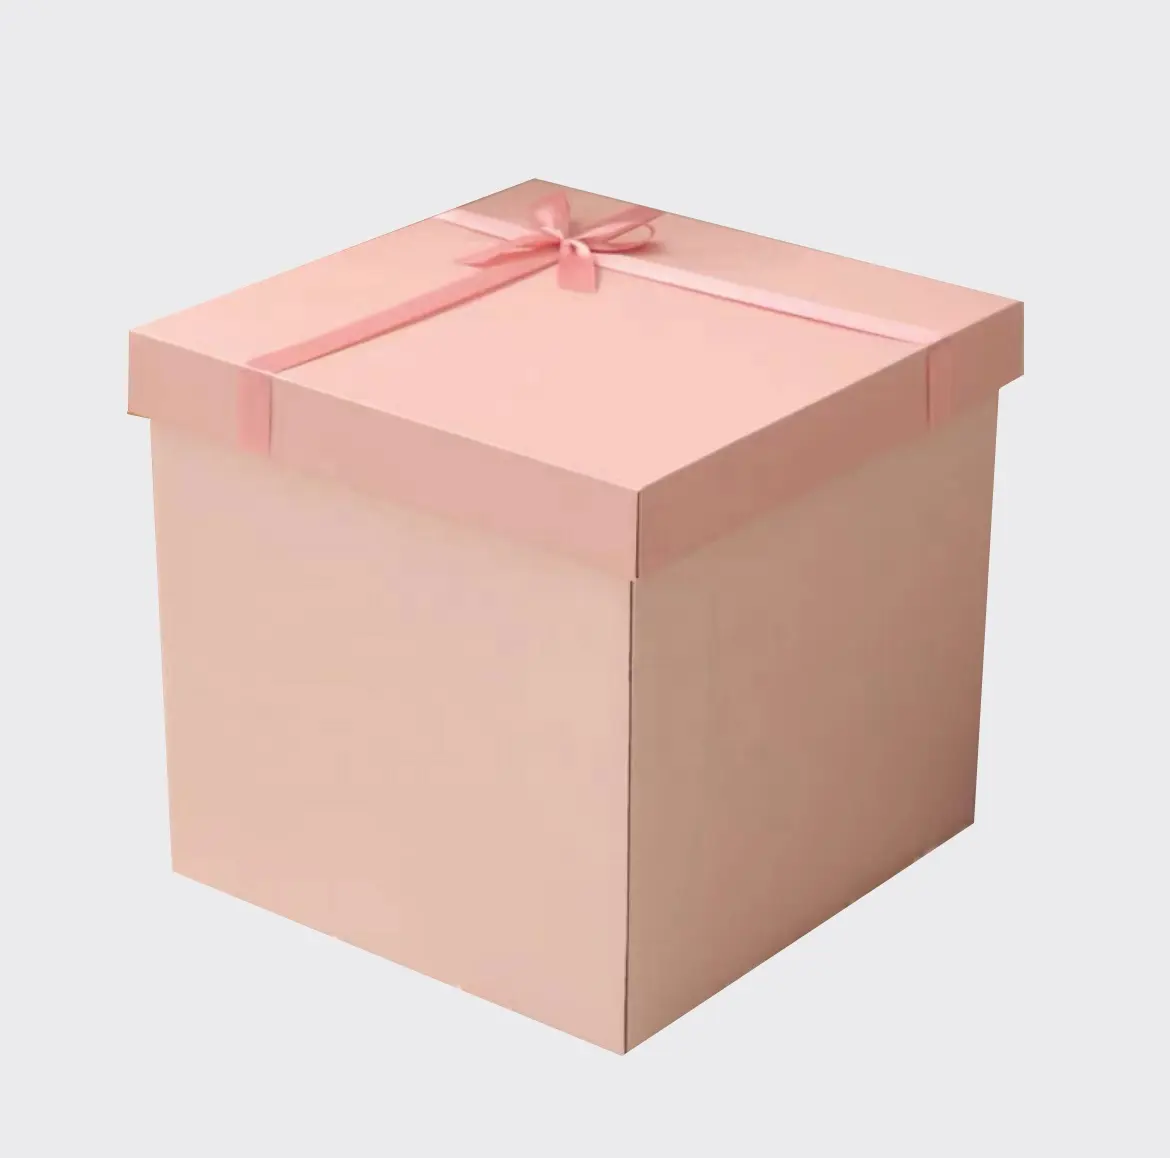 カスタム大型ギフトボックス誕生日ボックスホリデーギフト用大型カートン包装ボックス